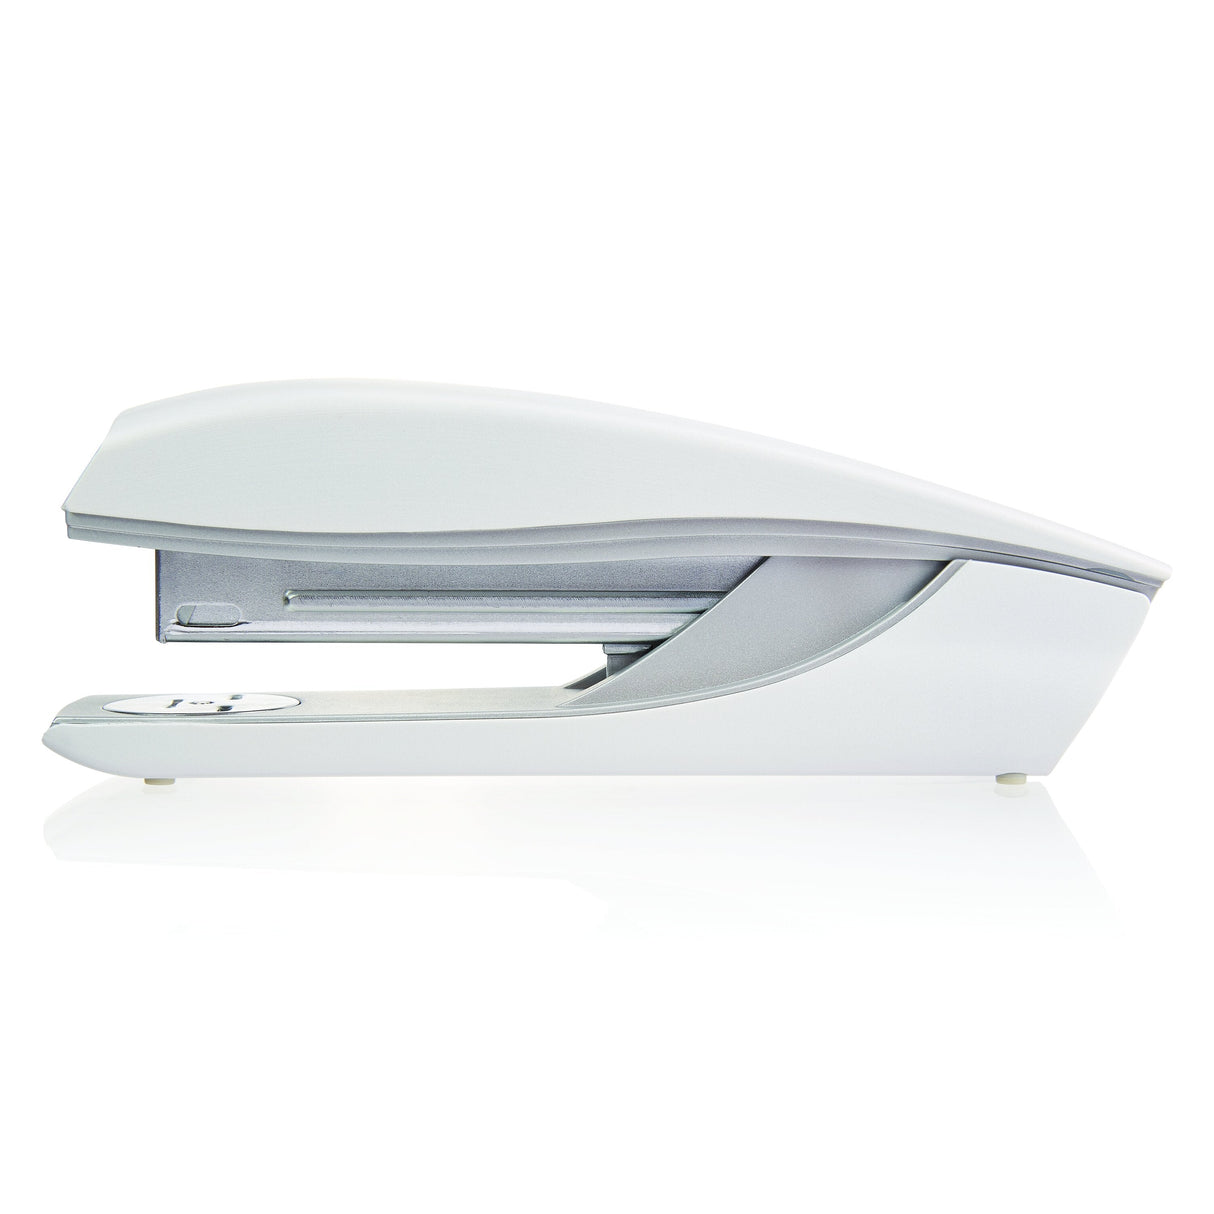 Swingline NeXXt Series Style Desktop Stapler, Model 40, White